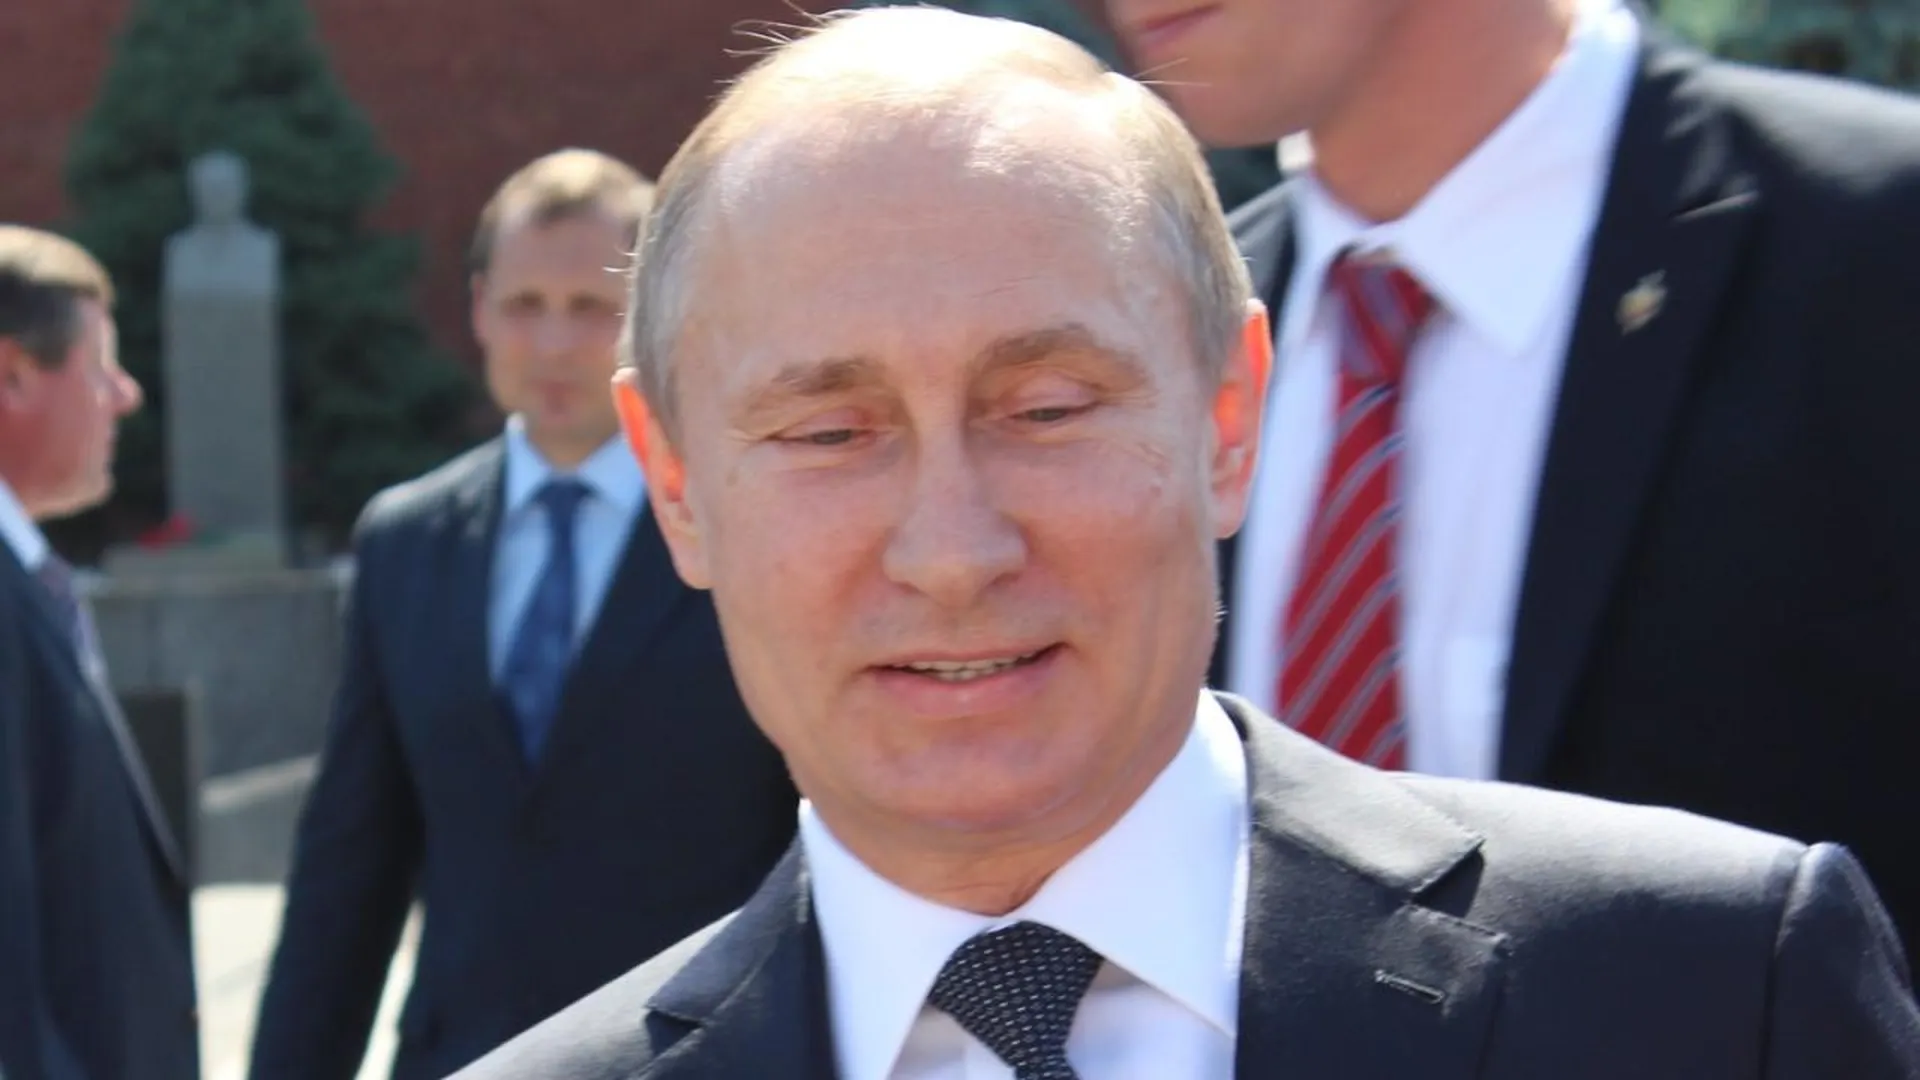 ЦИК принял документы на регистрацию Путина кандидатом на выборах президента